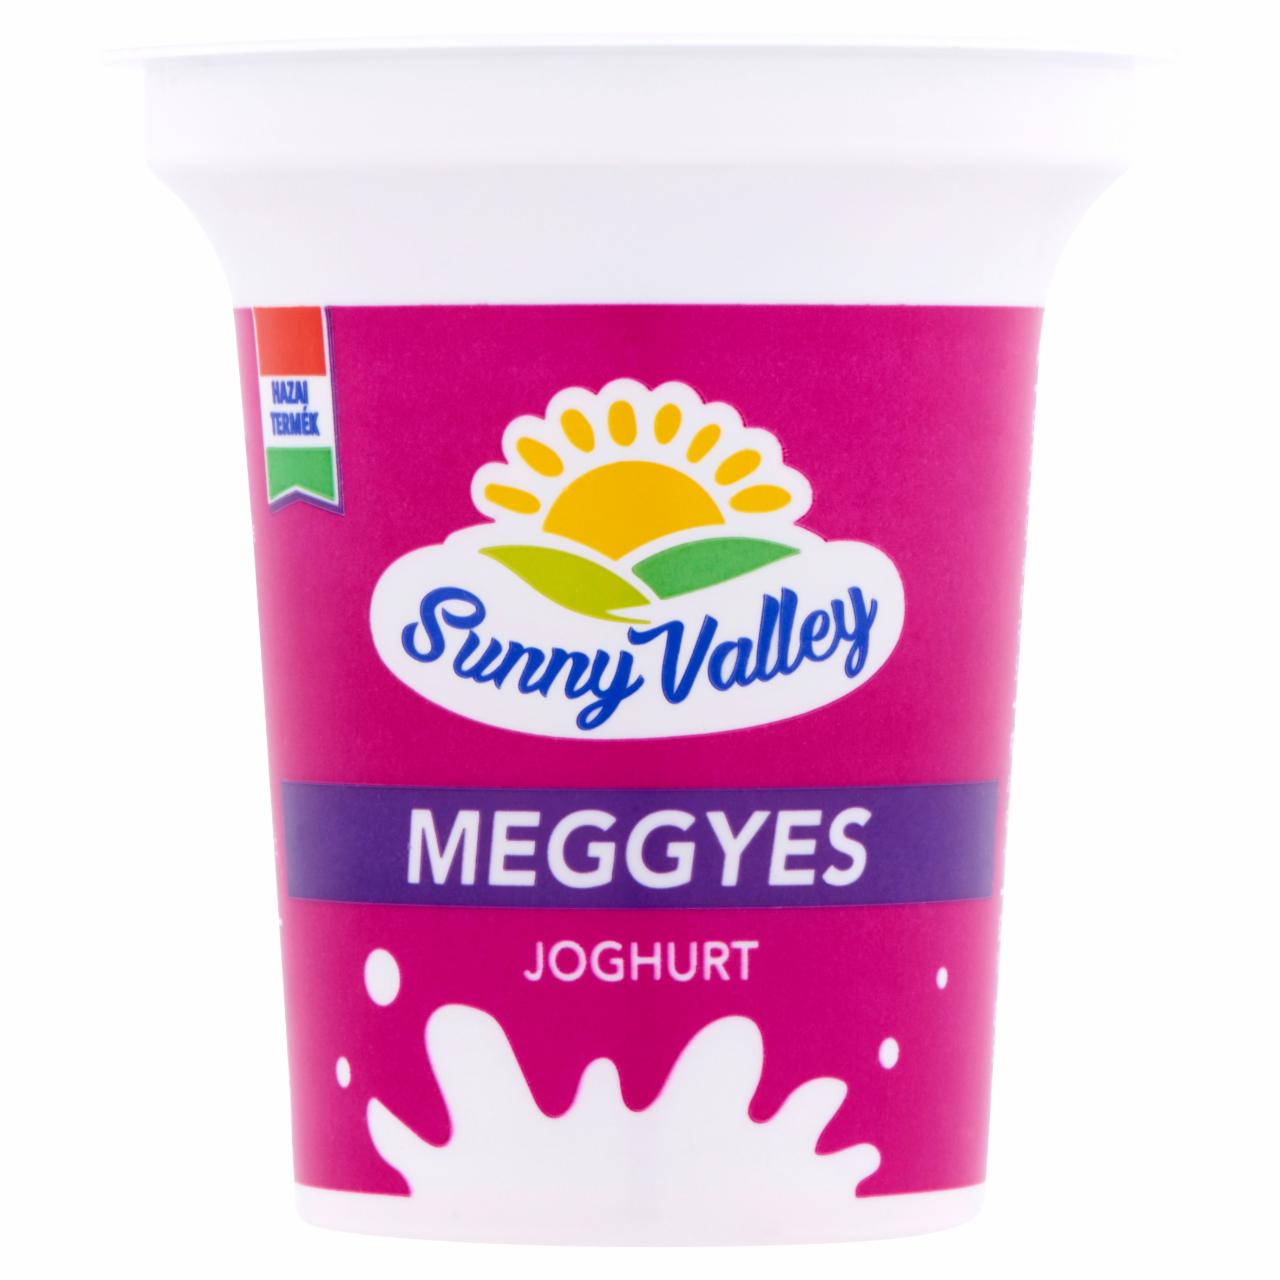 Képek - Sunny Valley élőflórás, zsírszegény meggyes joghurt 140 g